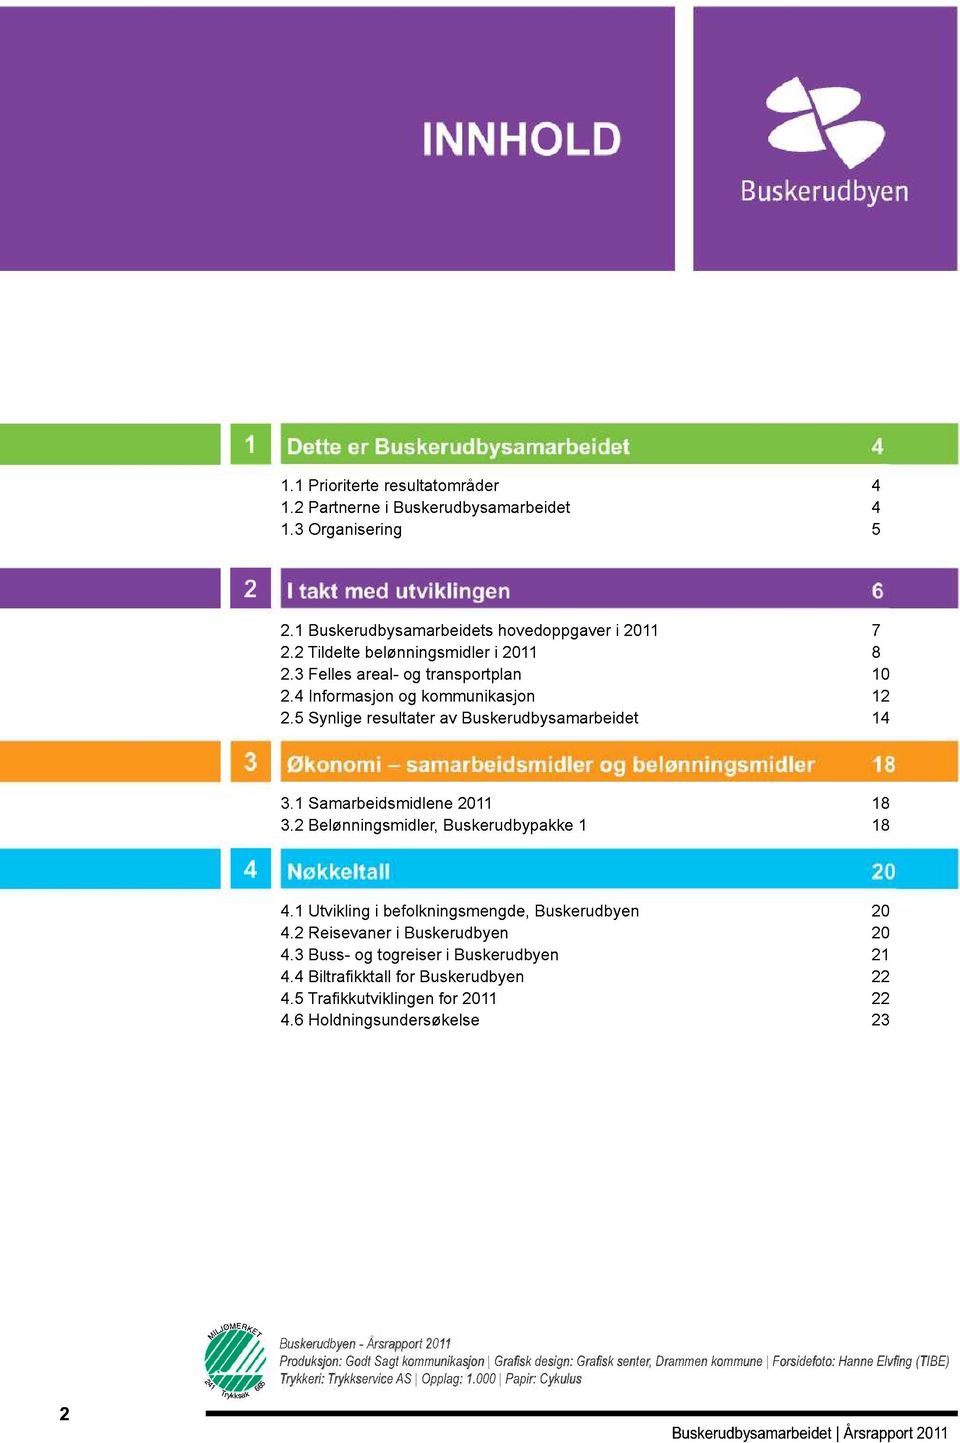 4 Informasjon og kommunikasjon 12 2.5 Synlige resultater av Buskerudbysamarbeidet 14 3 Økonomi samarbeidsmidler og belønningsmidler 18 3.1 Samarbeidsmidlene 2011 18 3.